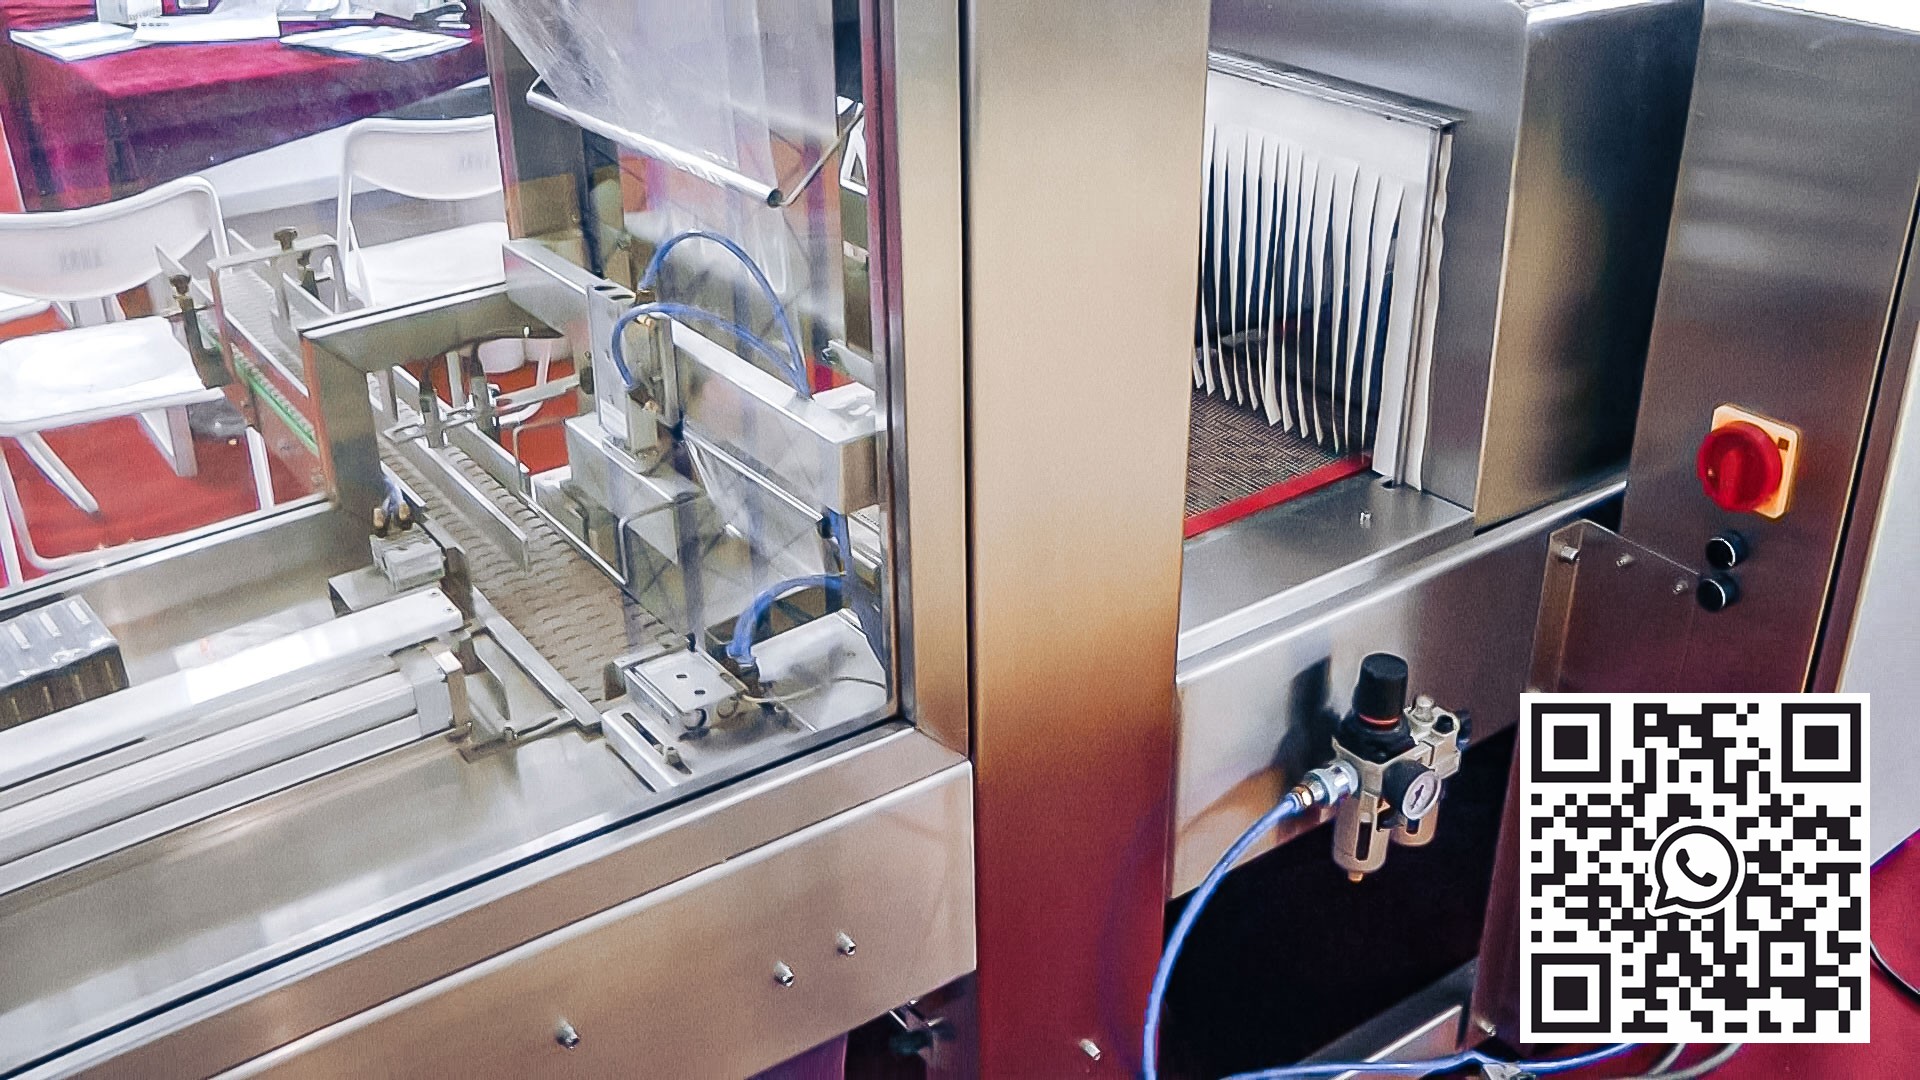 Equipo automático para el envasado de cajas de celofán en la producción farmacéutica